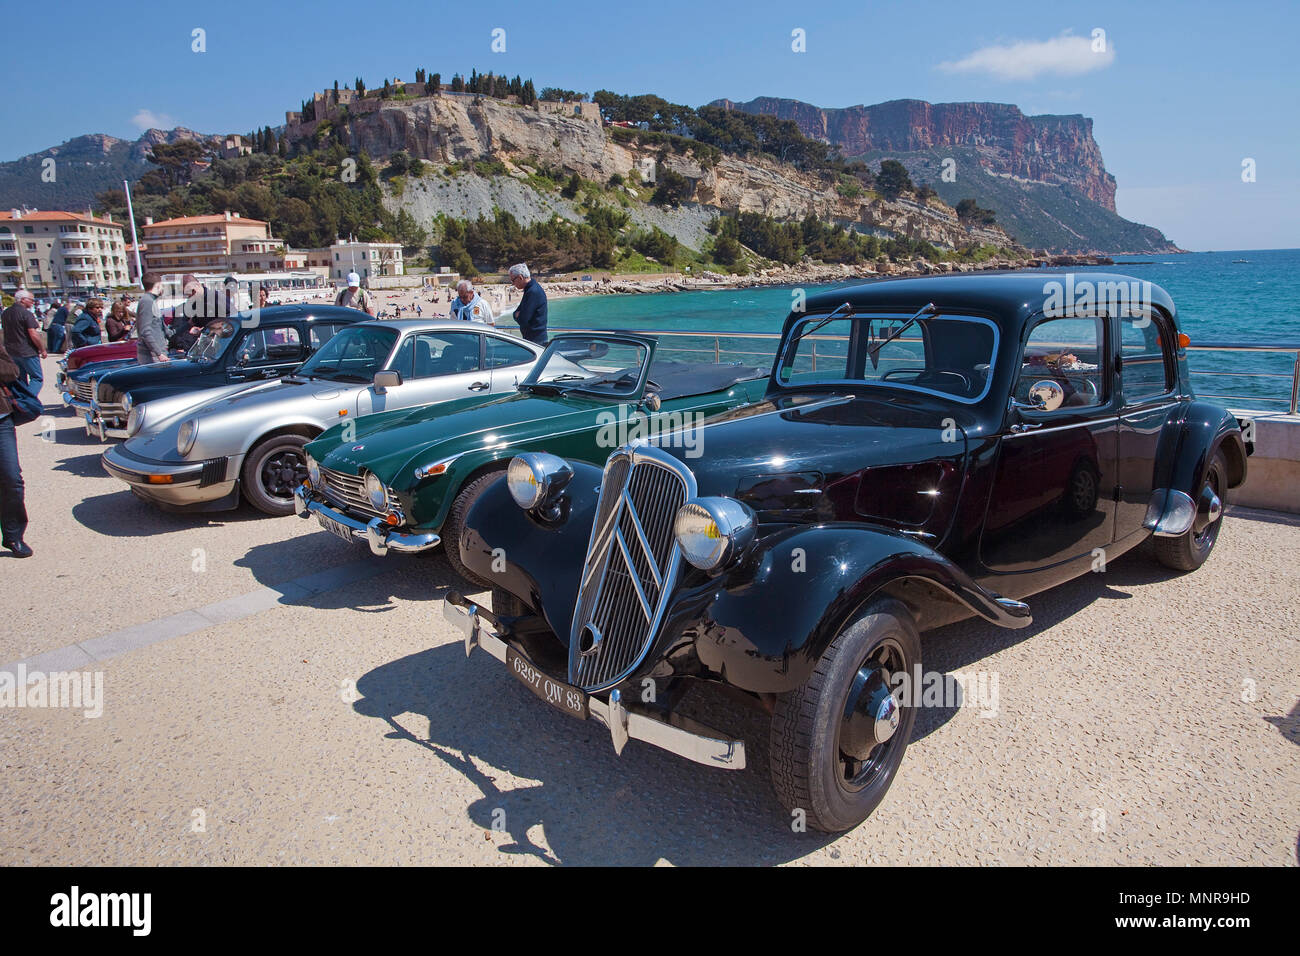 Klassische Autos am Hafen von Cassis, Bouches-du-Rhône der Region Provence-Alpes-Côte d'Azur, Südfrankreich, Frankreich, Europa Stockfoto